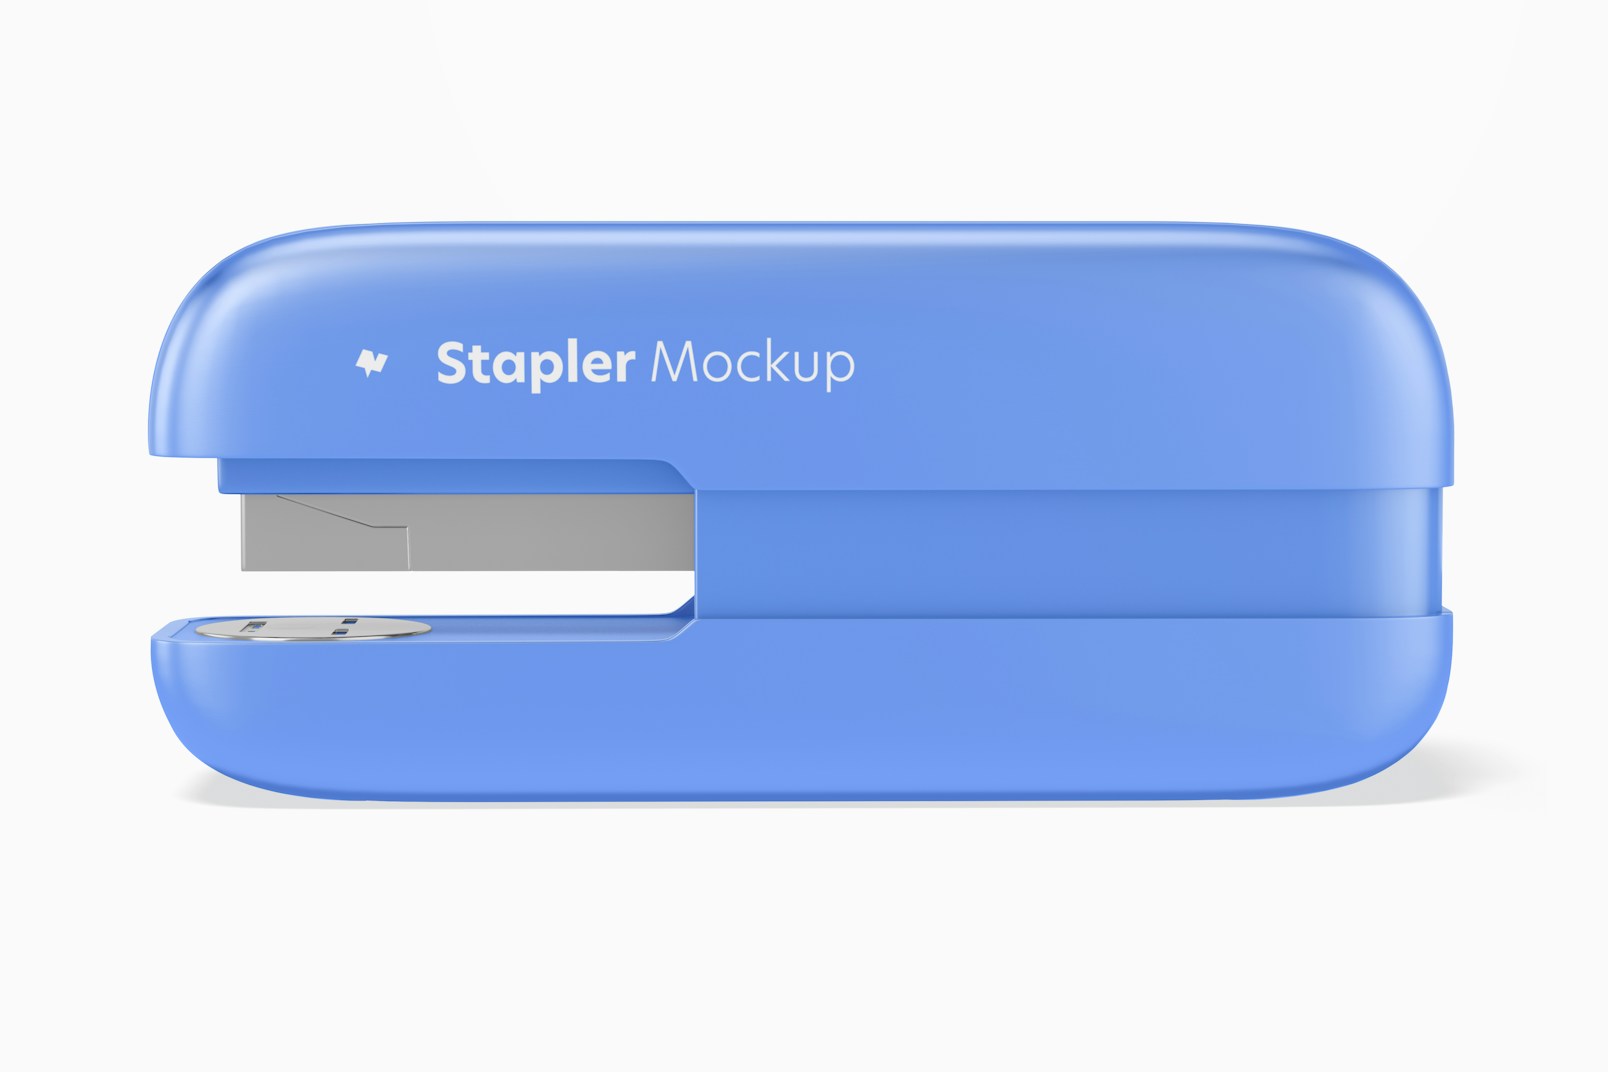 Stapler Mockup